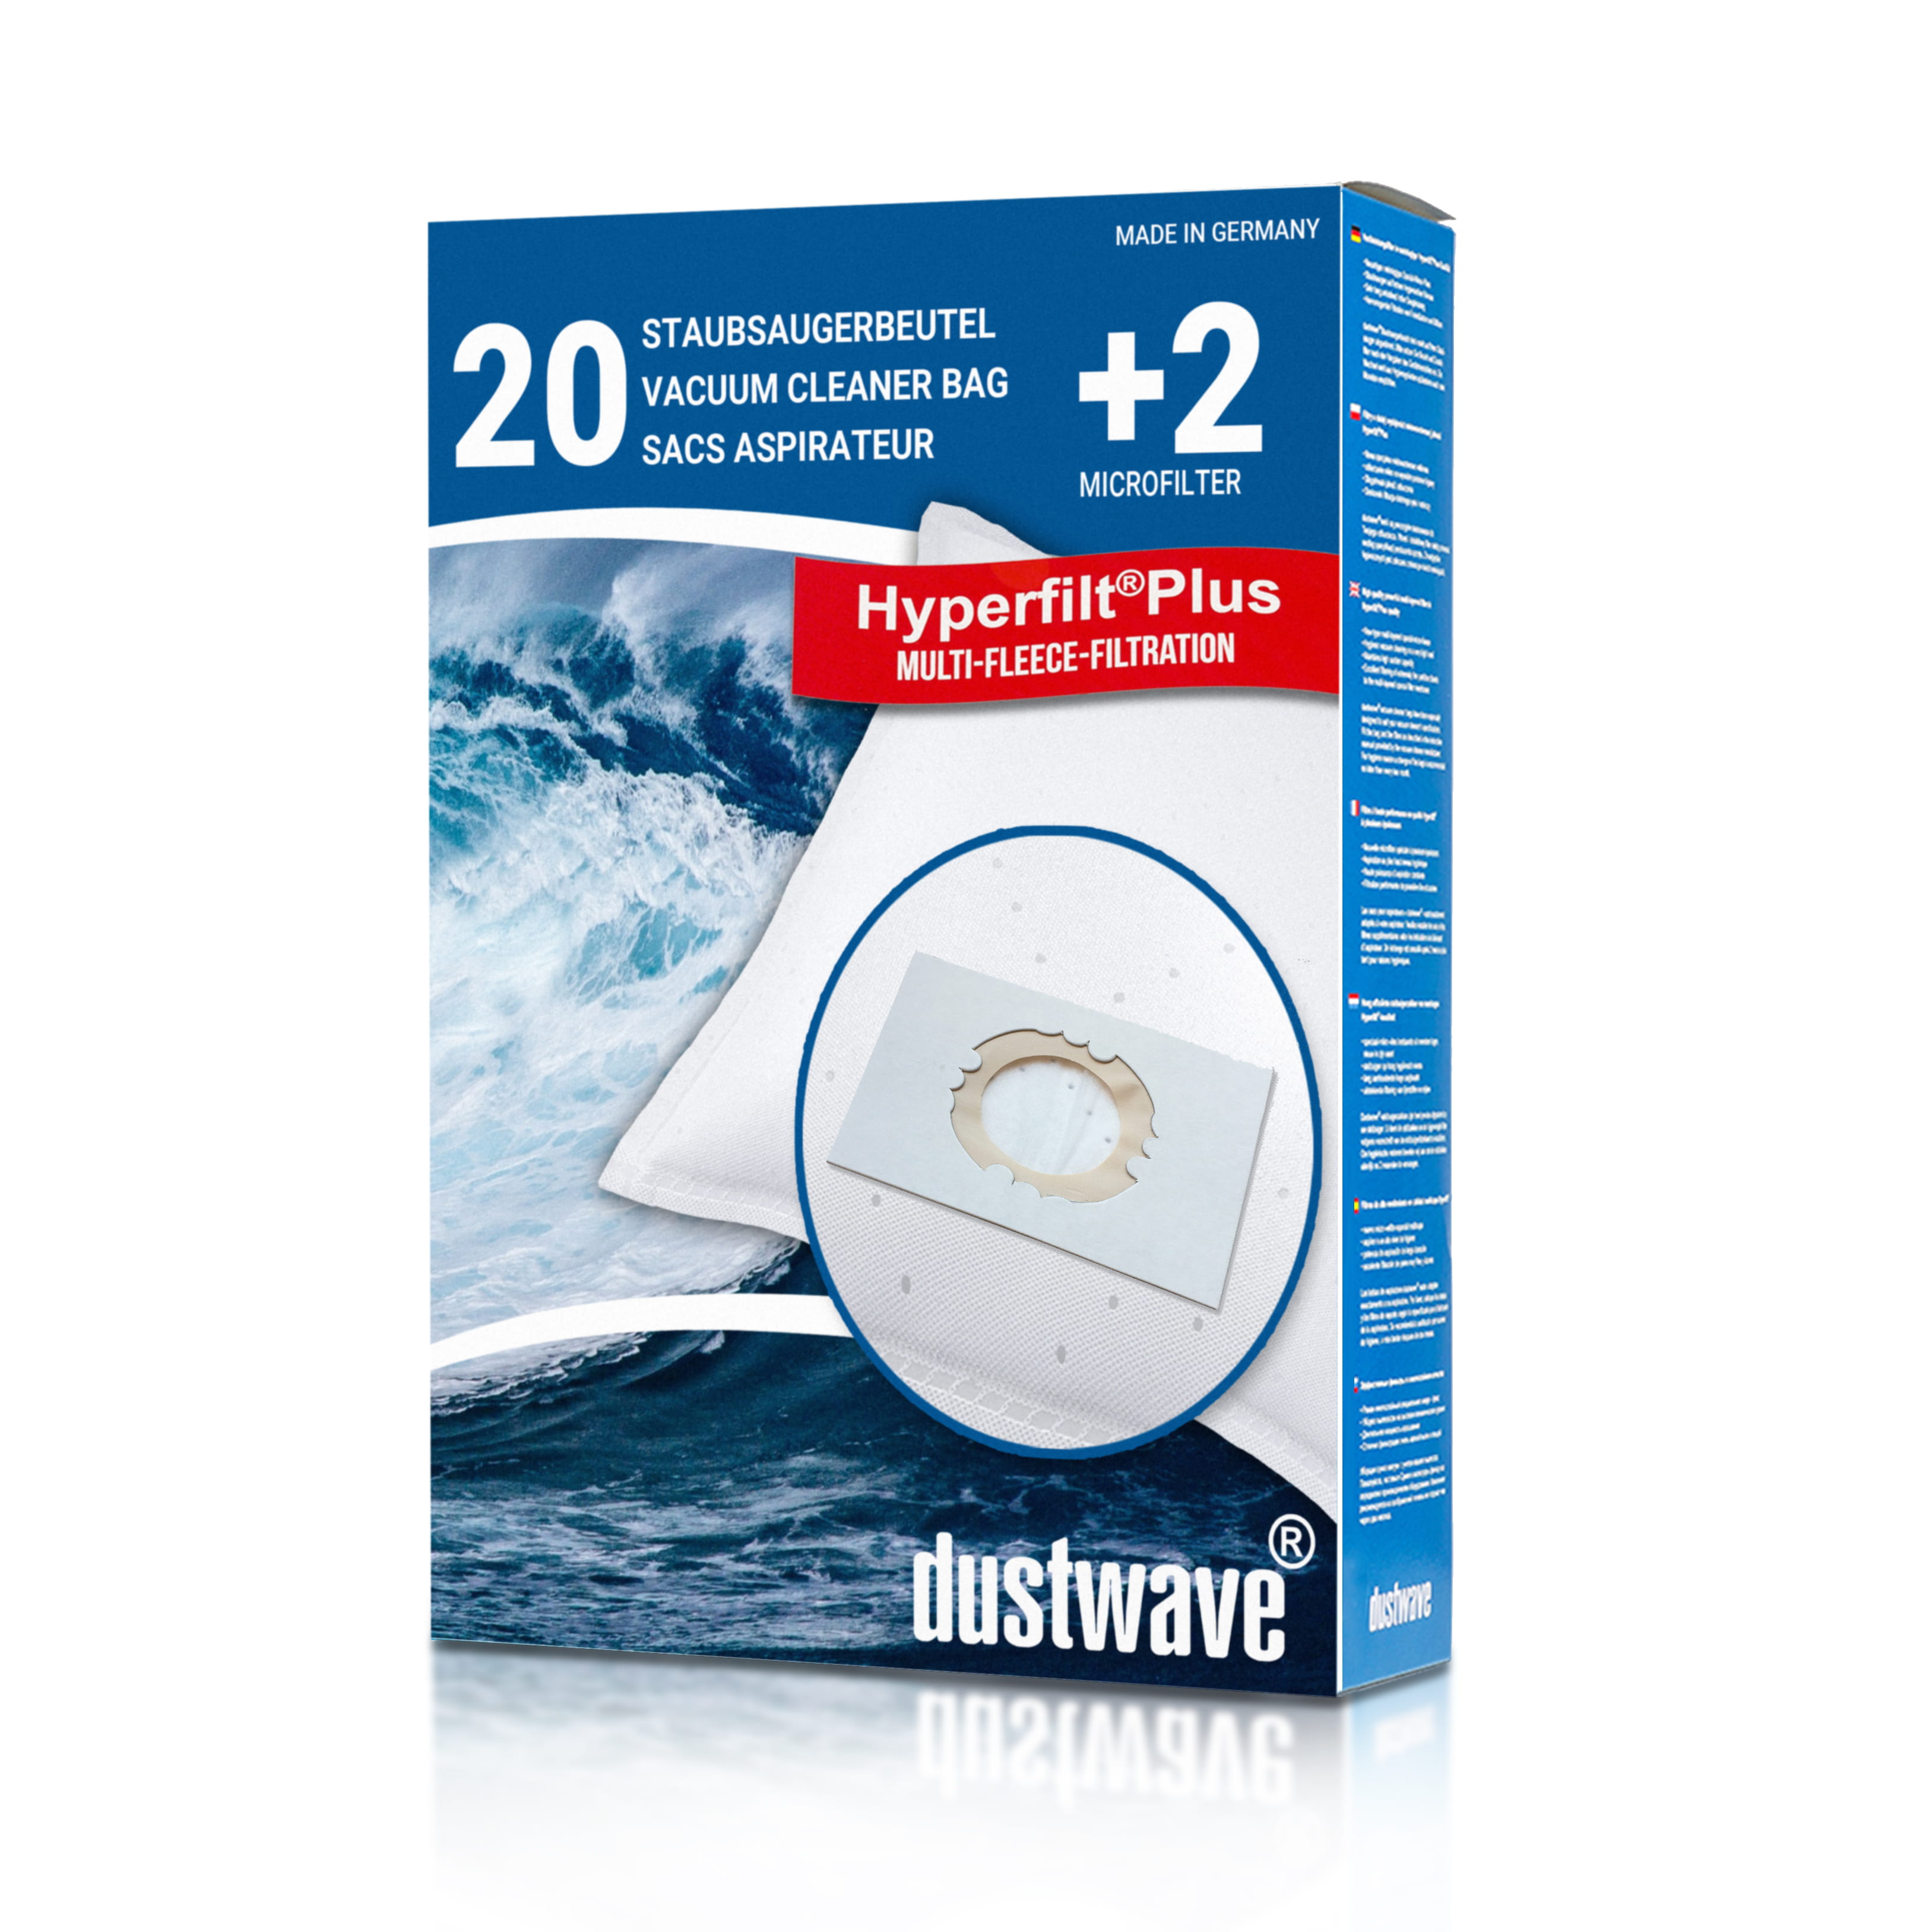 Dustwave® 20 Staubsaugerbeutel für Hoover SCST200F011 - hocheffizient, mehrlagiges Mikrovlies mit Hygieneverschluss - Made in Germany